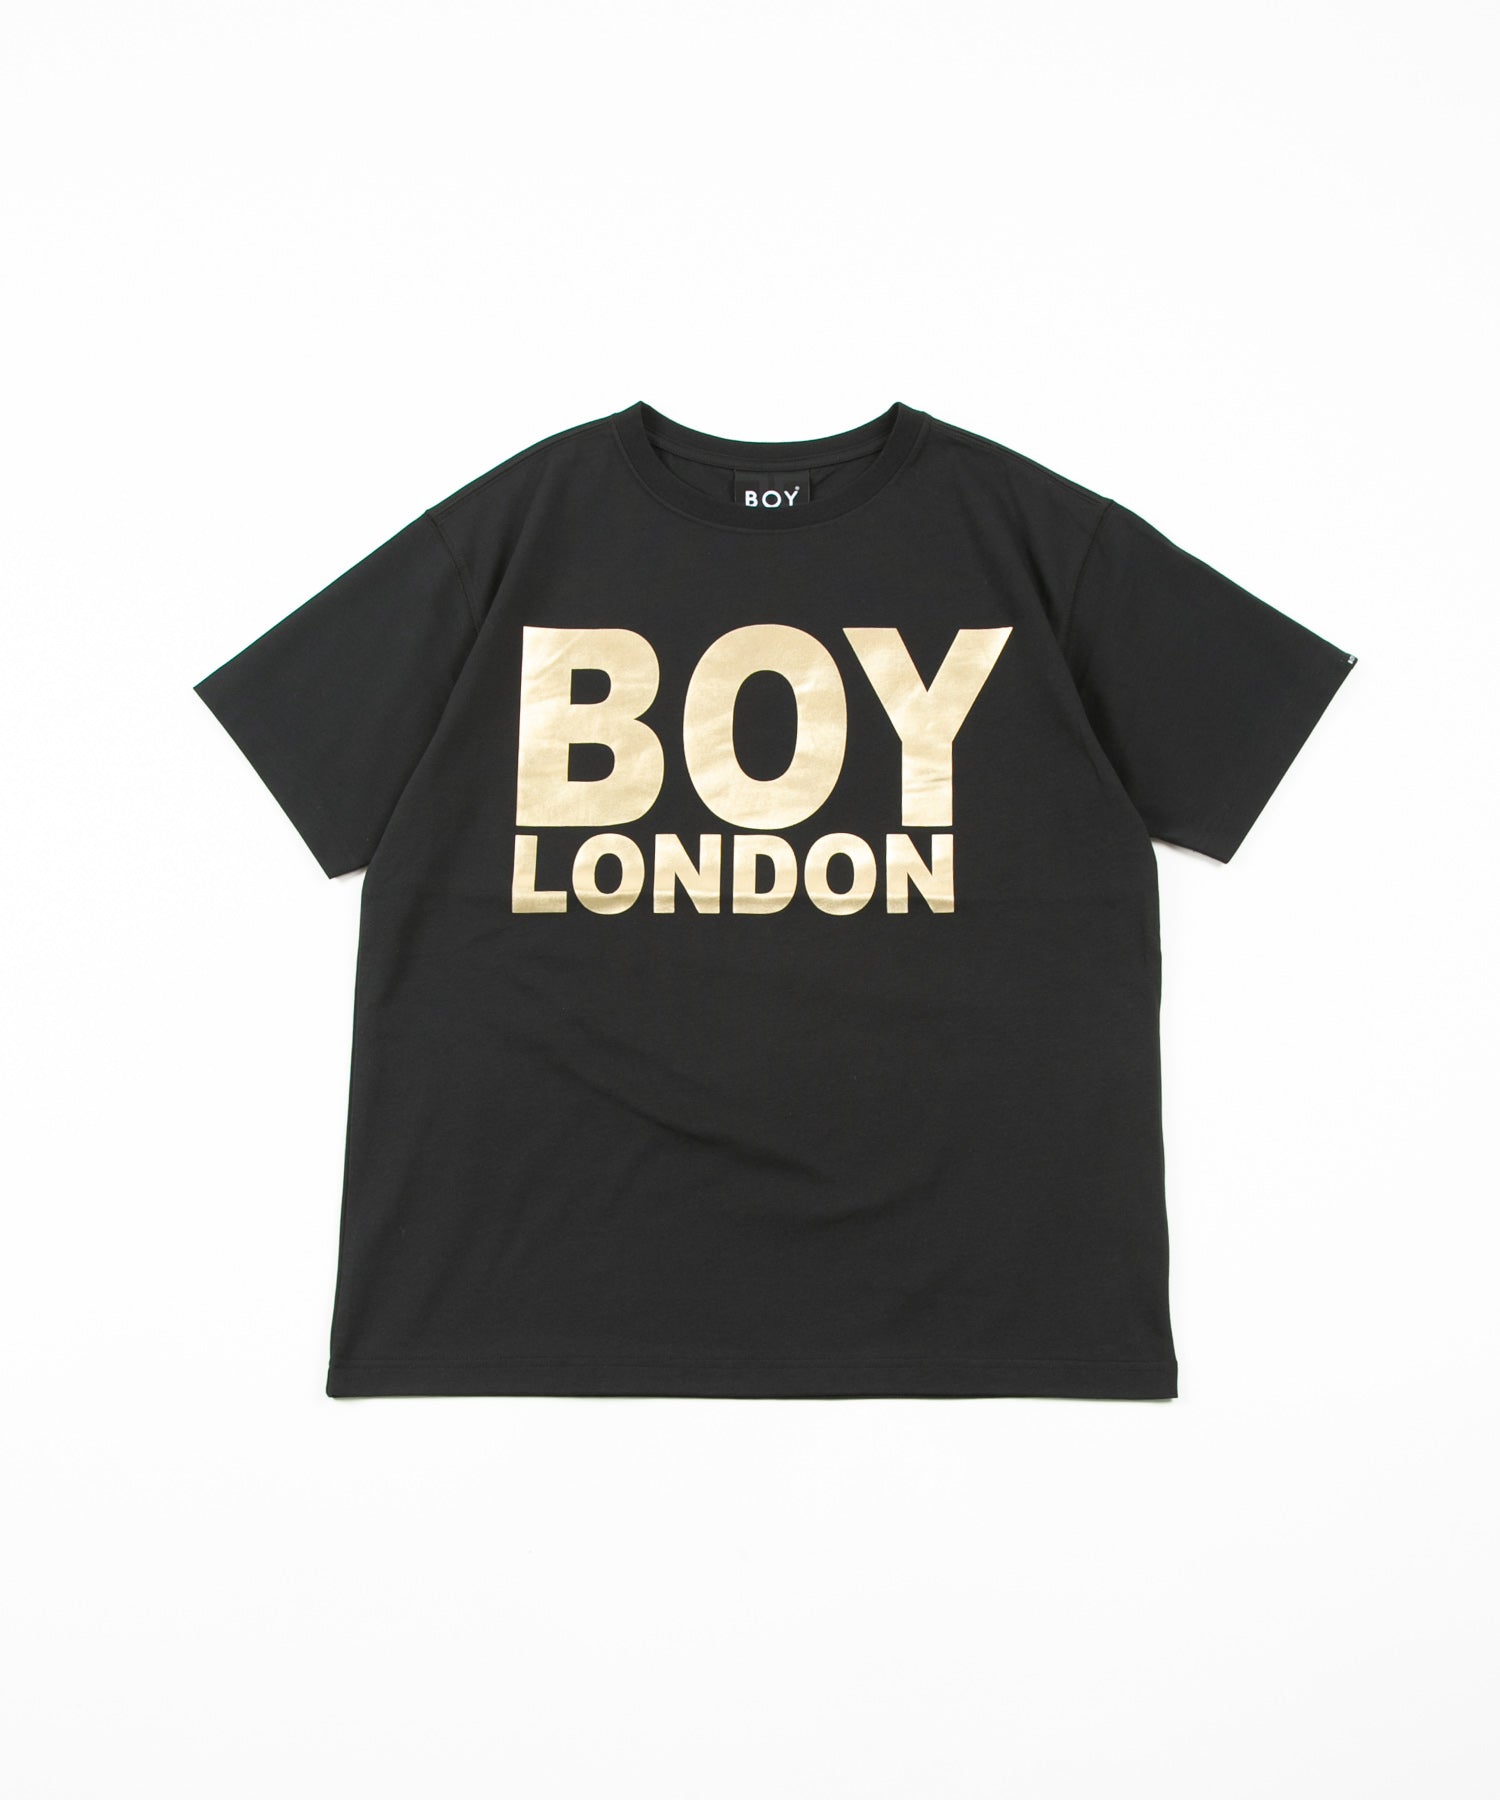 D boy London tee Tシャツ tee ペイント paint ロゴトップス - Tシャツ ...